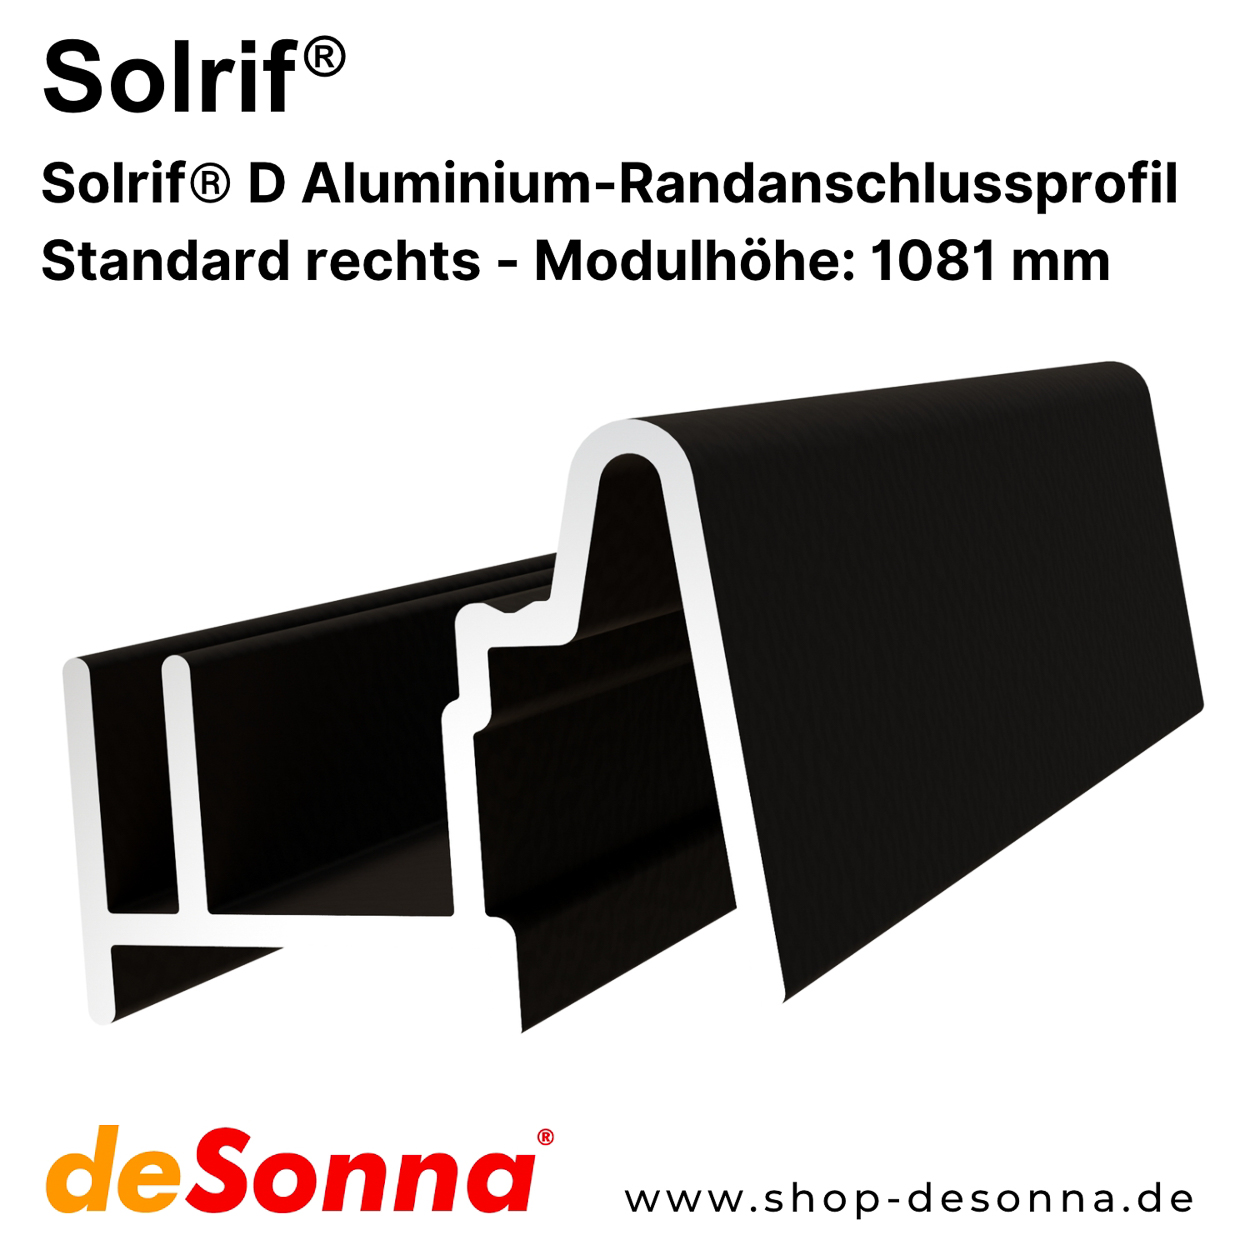 Solrif® D Standard rechts - Aluminium-Randanschlussprofil - Modulhöhe 1081 mm